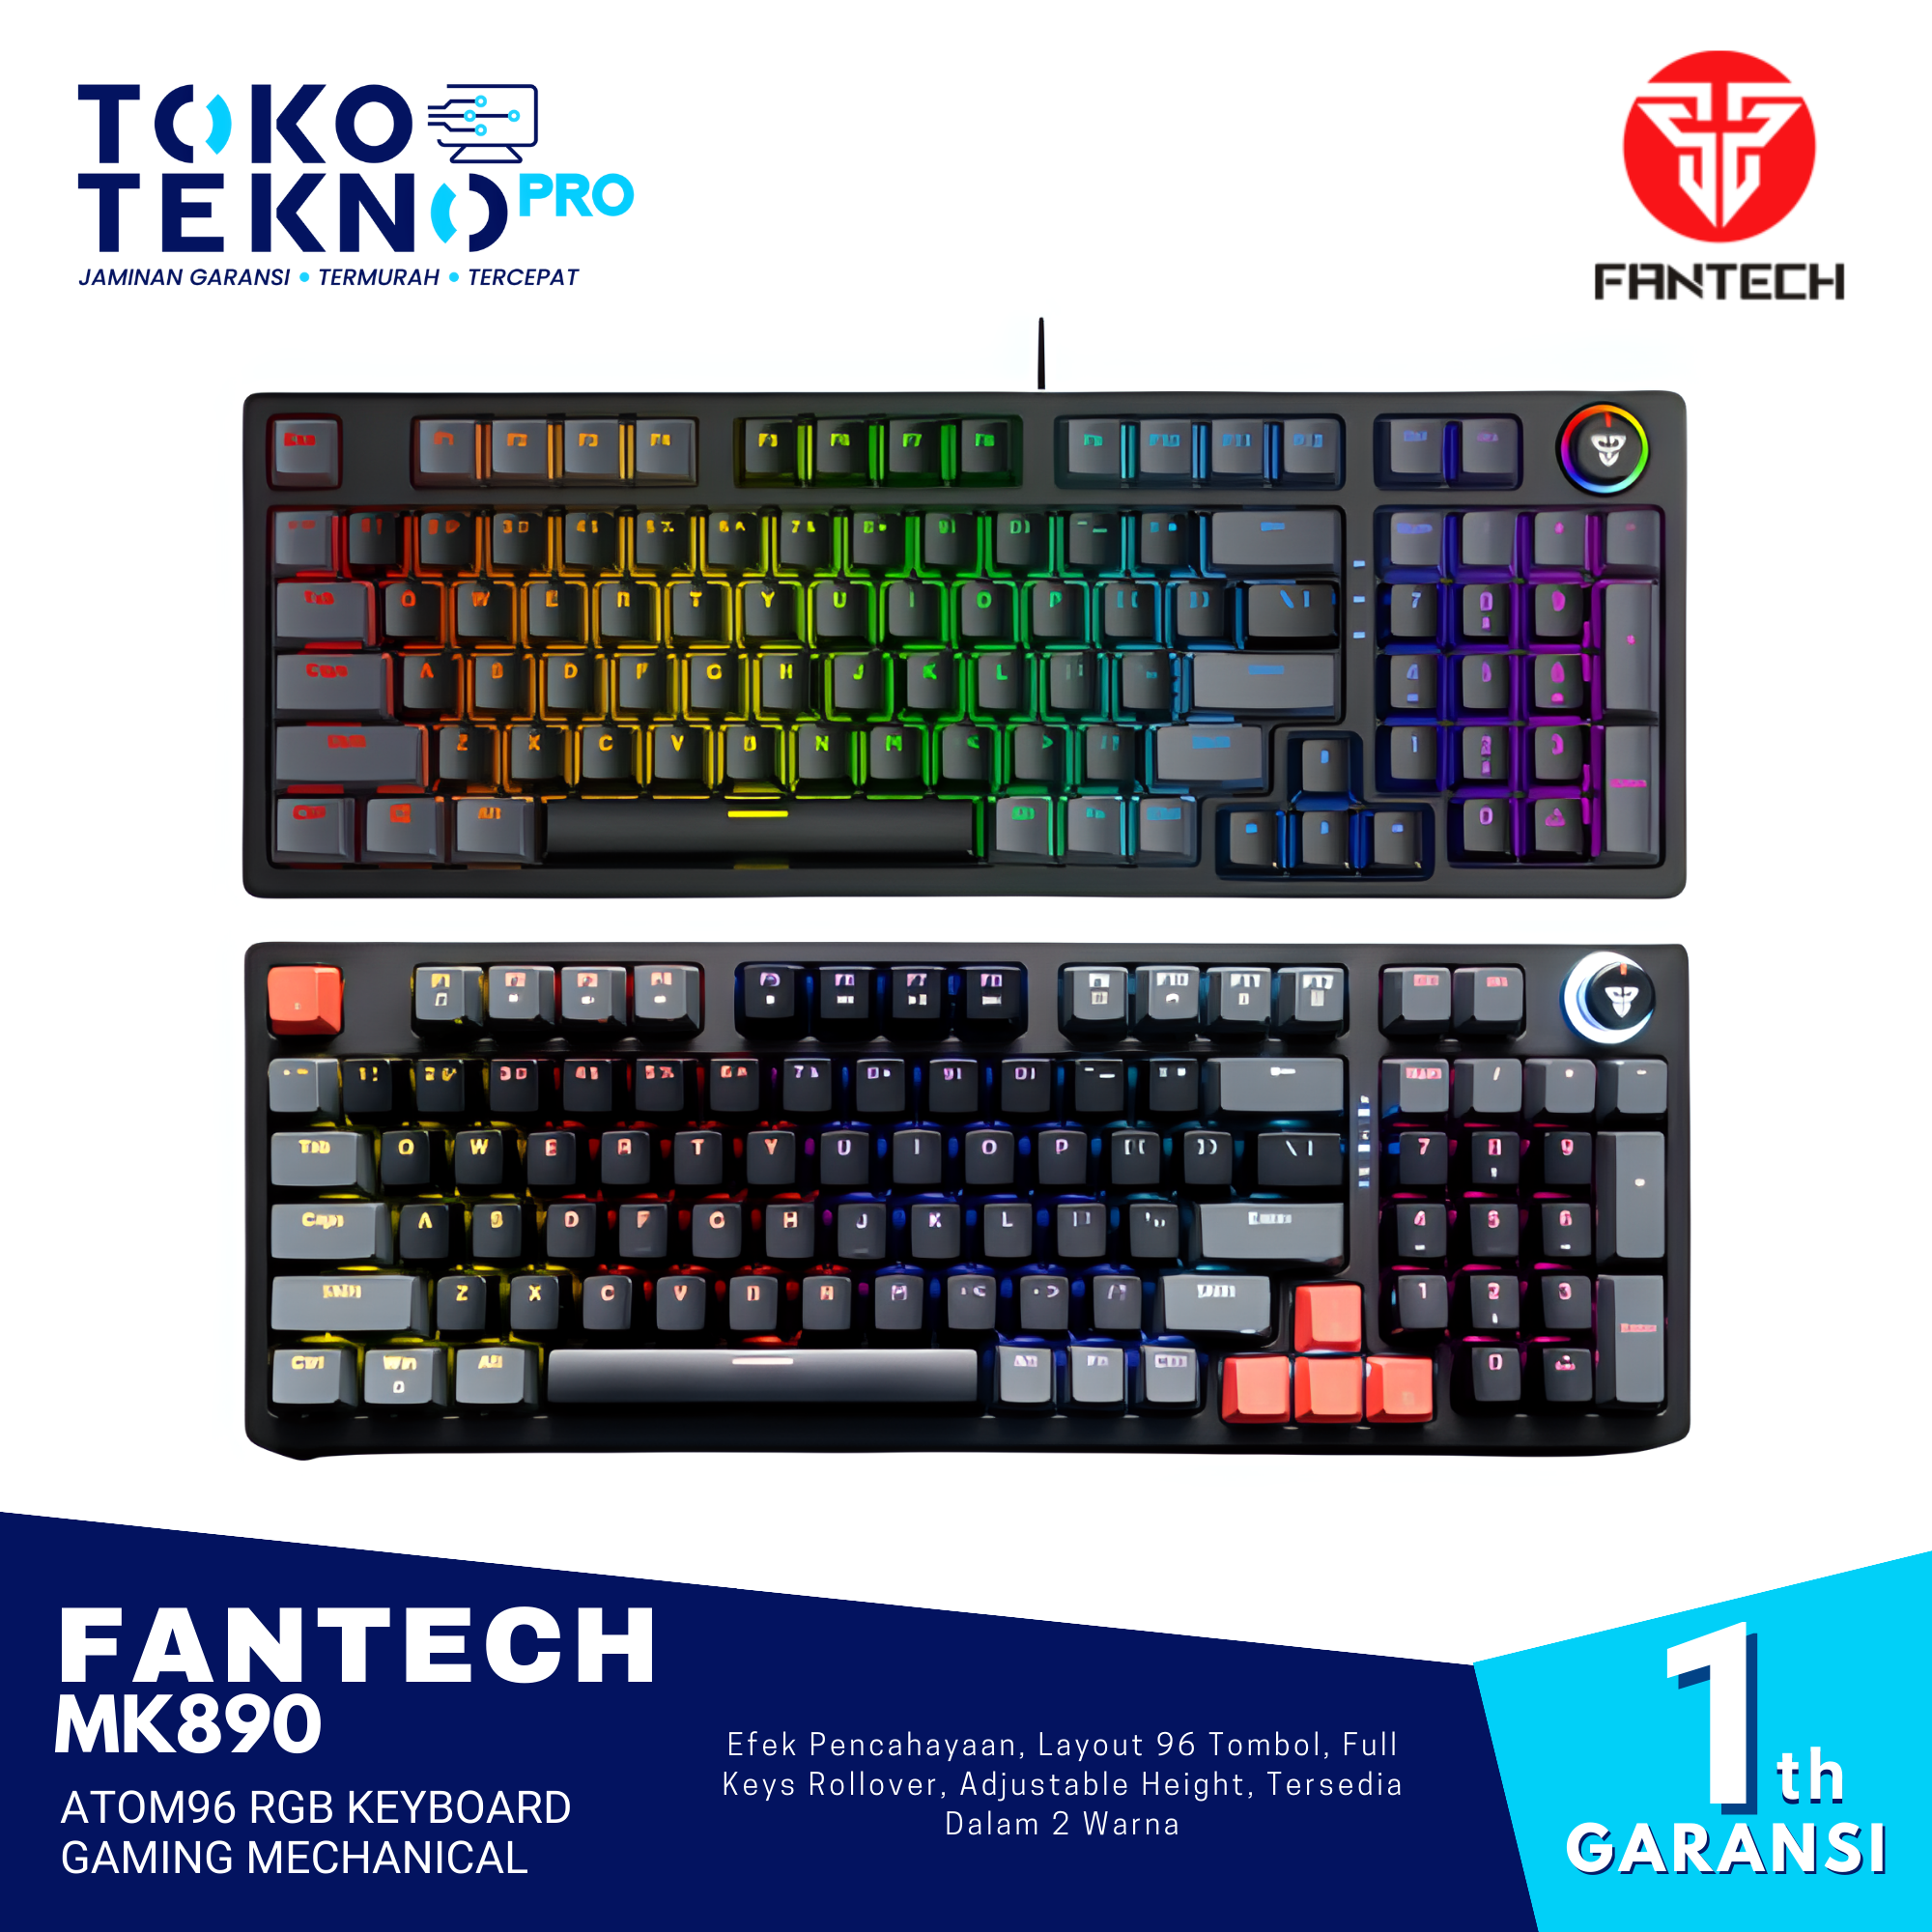 Fantech MK890 Atom96 RGB Keyboard Gaming Mechanical Full Size